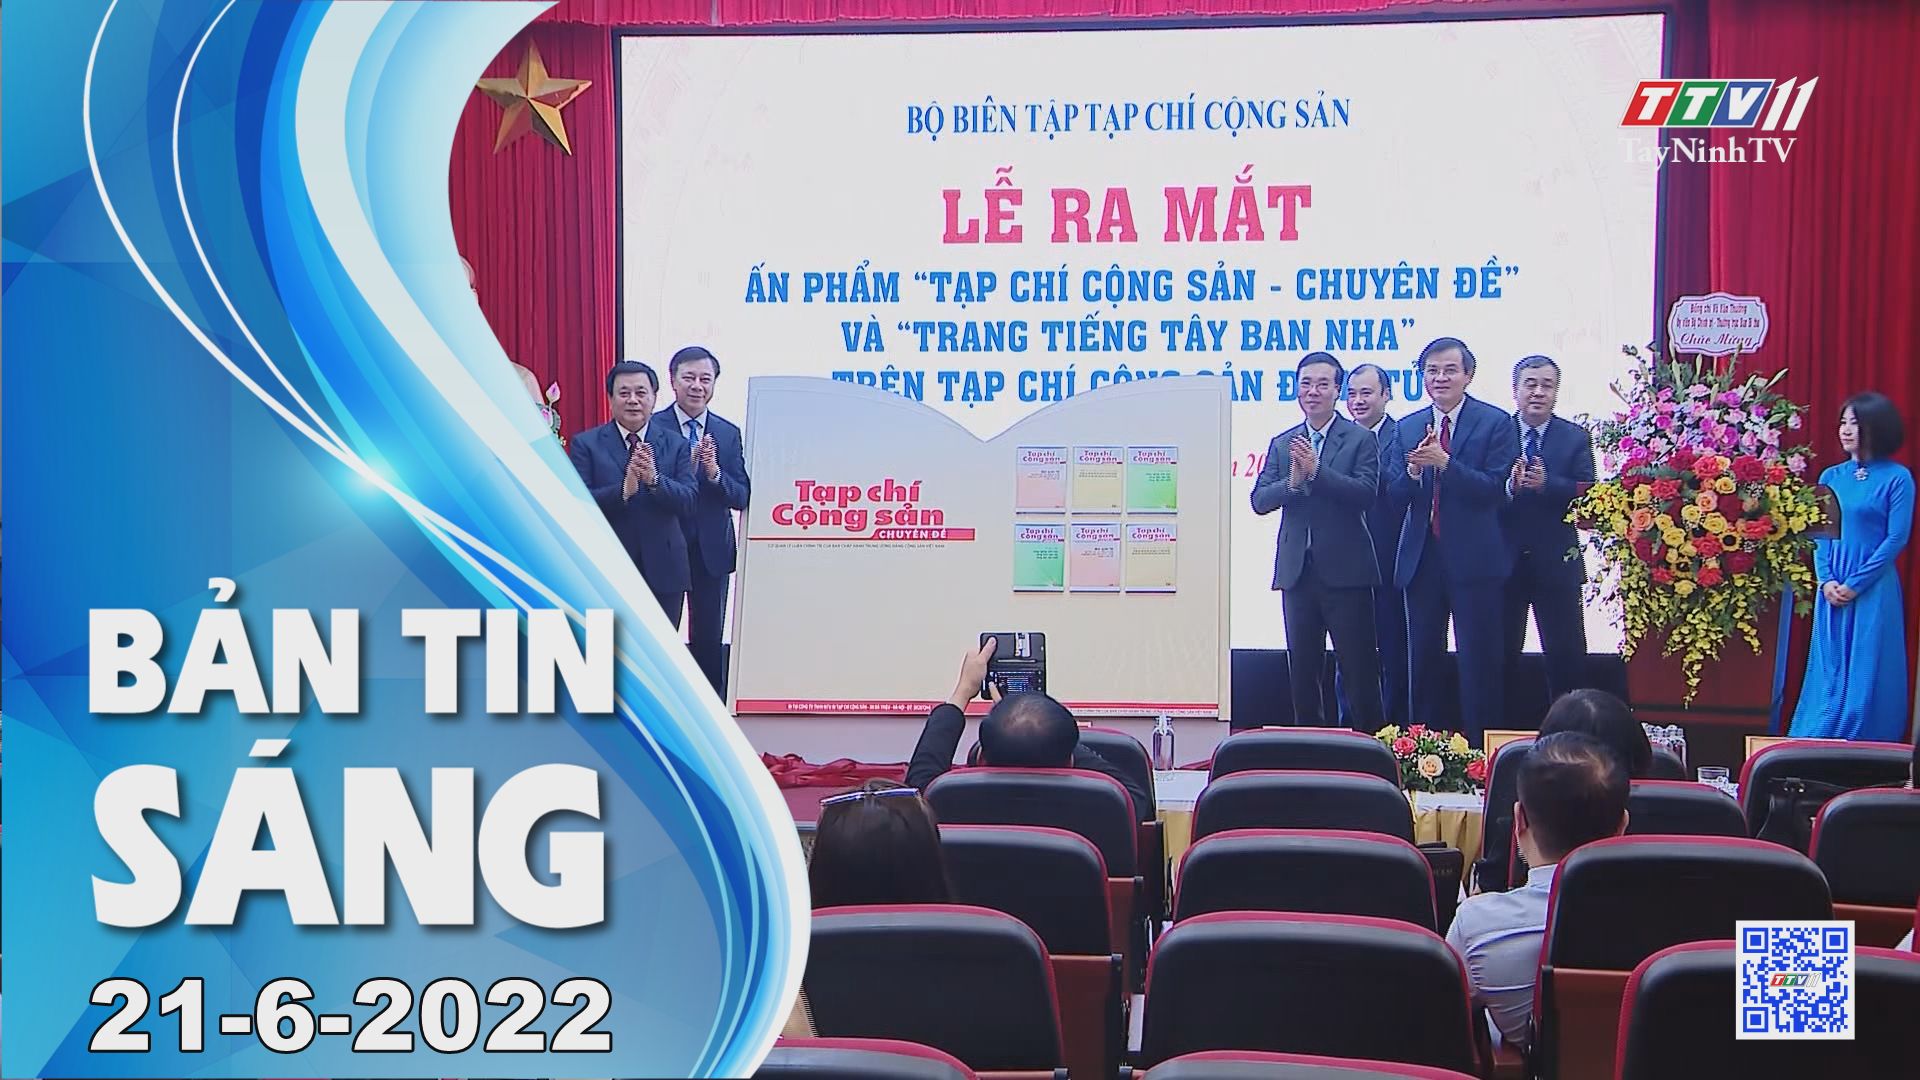 Bản tin sáng 21-6-2022 | Tin tức hôm nay | TayNinhTV